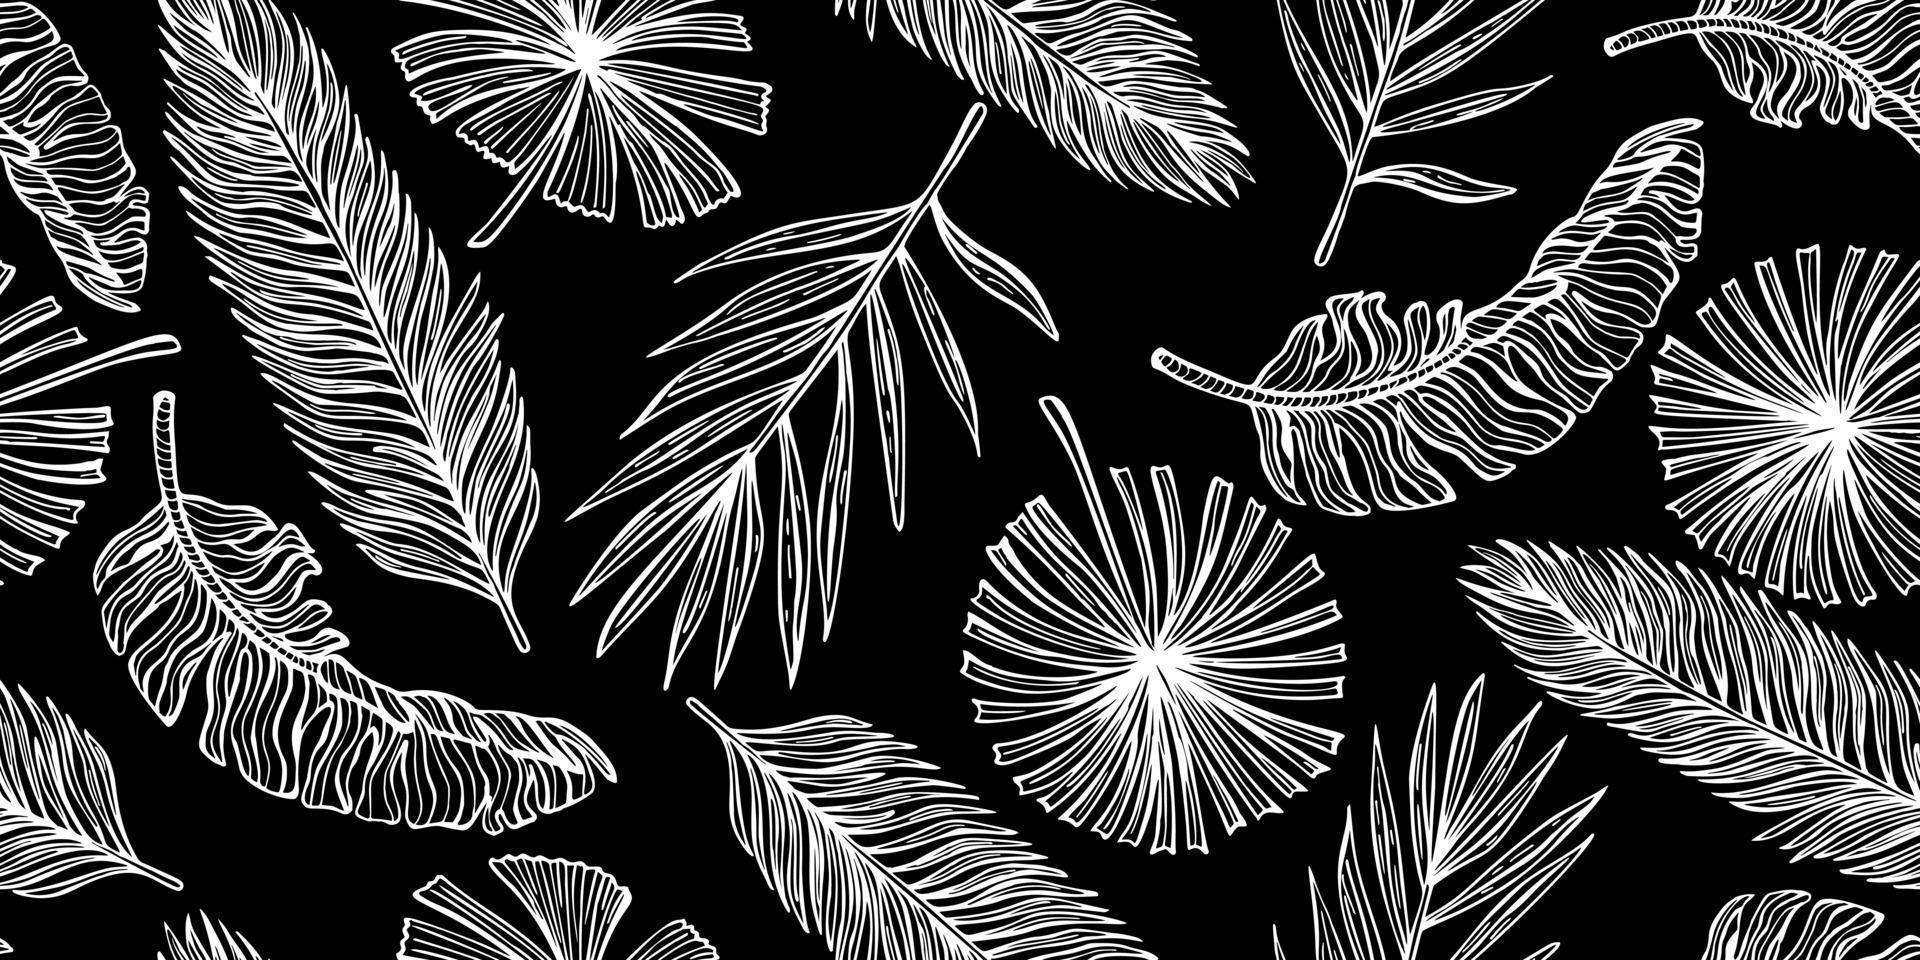 tropische blätter nahtloses muster auf schwarzem hintergrund. vintage blatt aus banane und palme im gravurstil. vektor